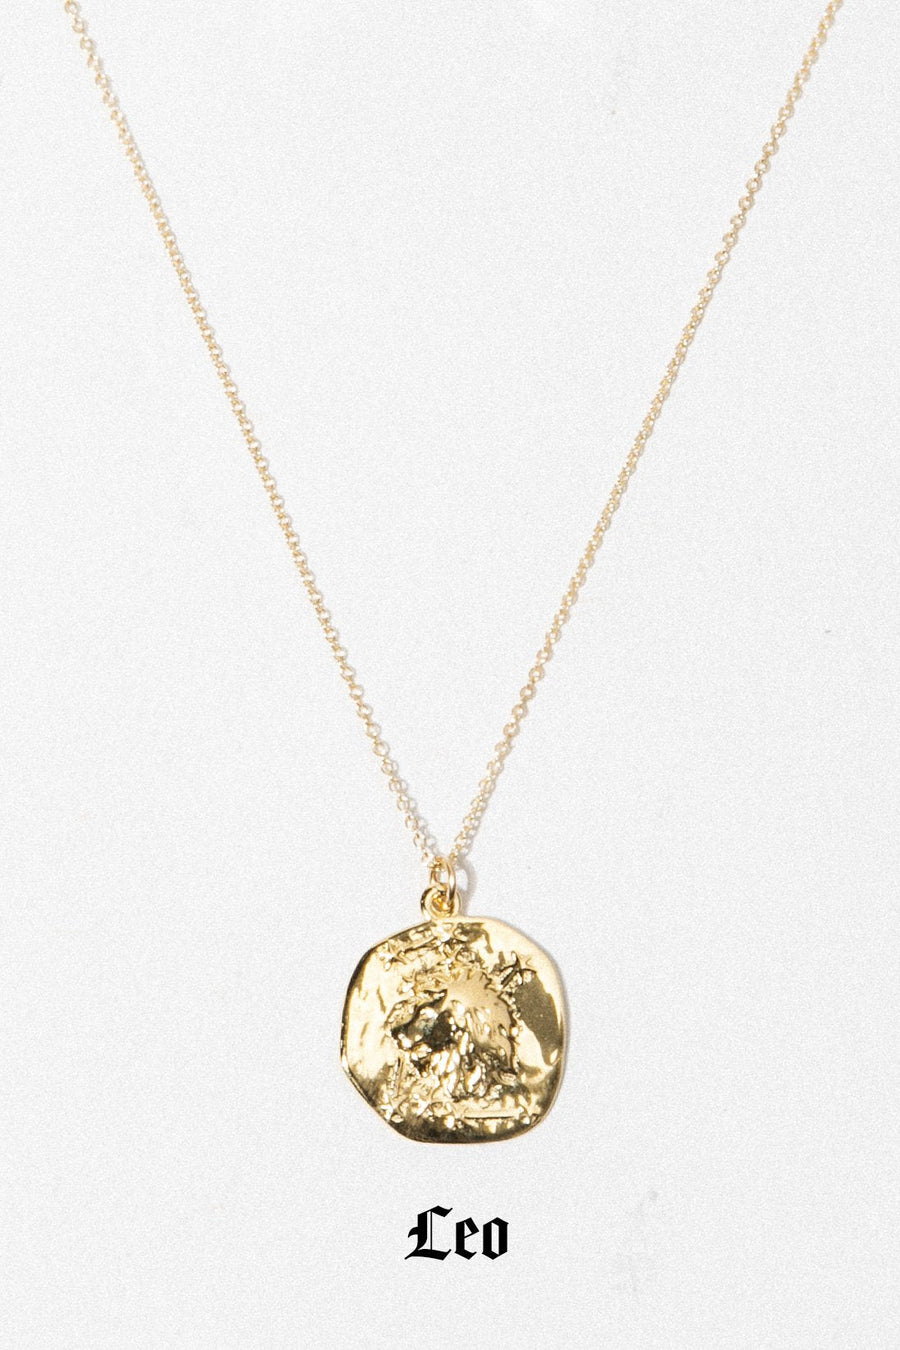 Studio Grun Jewelry Leo / Gold / 20 inches Zodiac Necklace